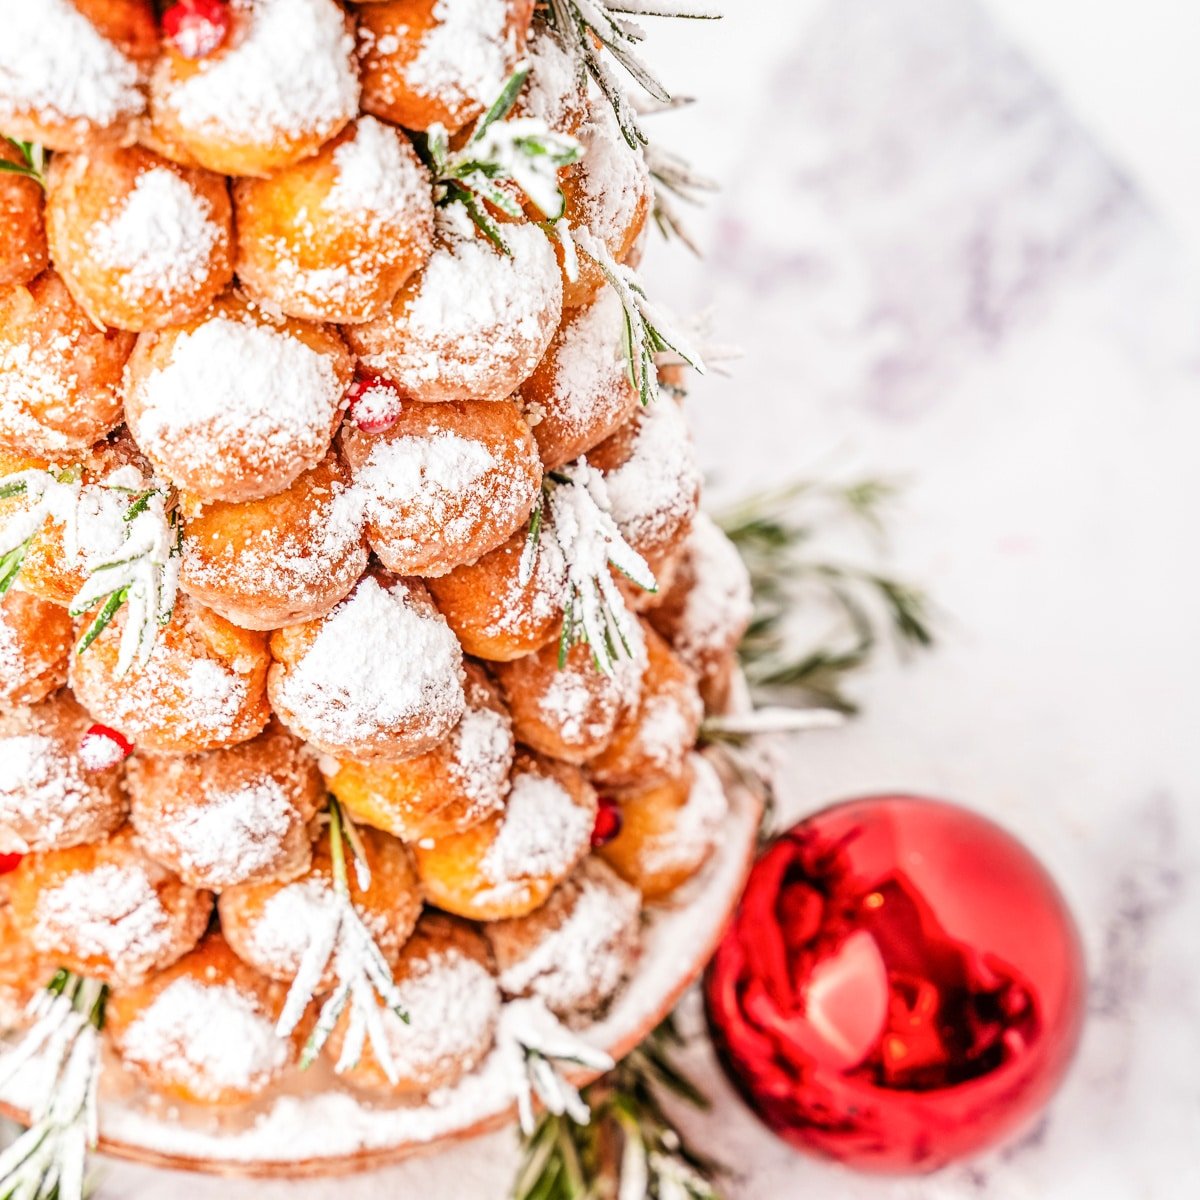 Donut Hole Christmas Tree on a cake stand.